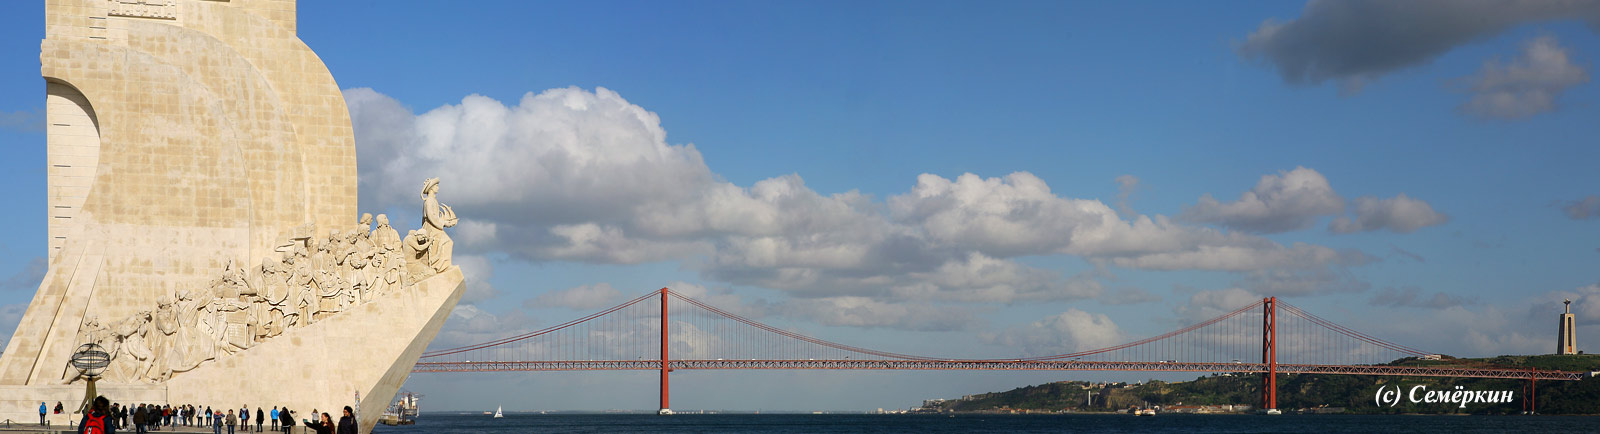 Лиссабон, Lisboa -  мост 25 апреля и памятник Первооткрывателям